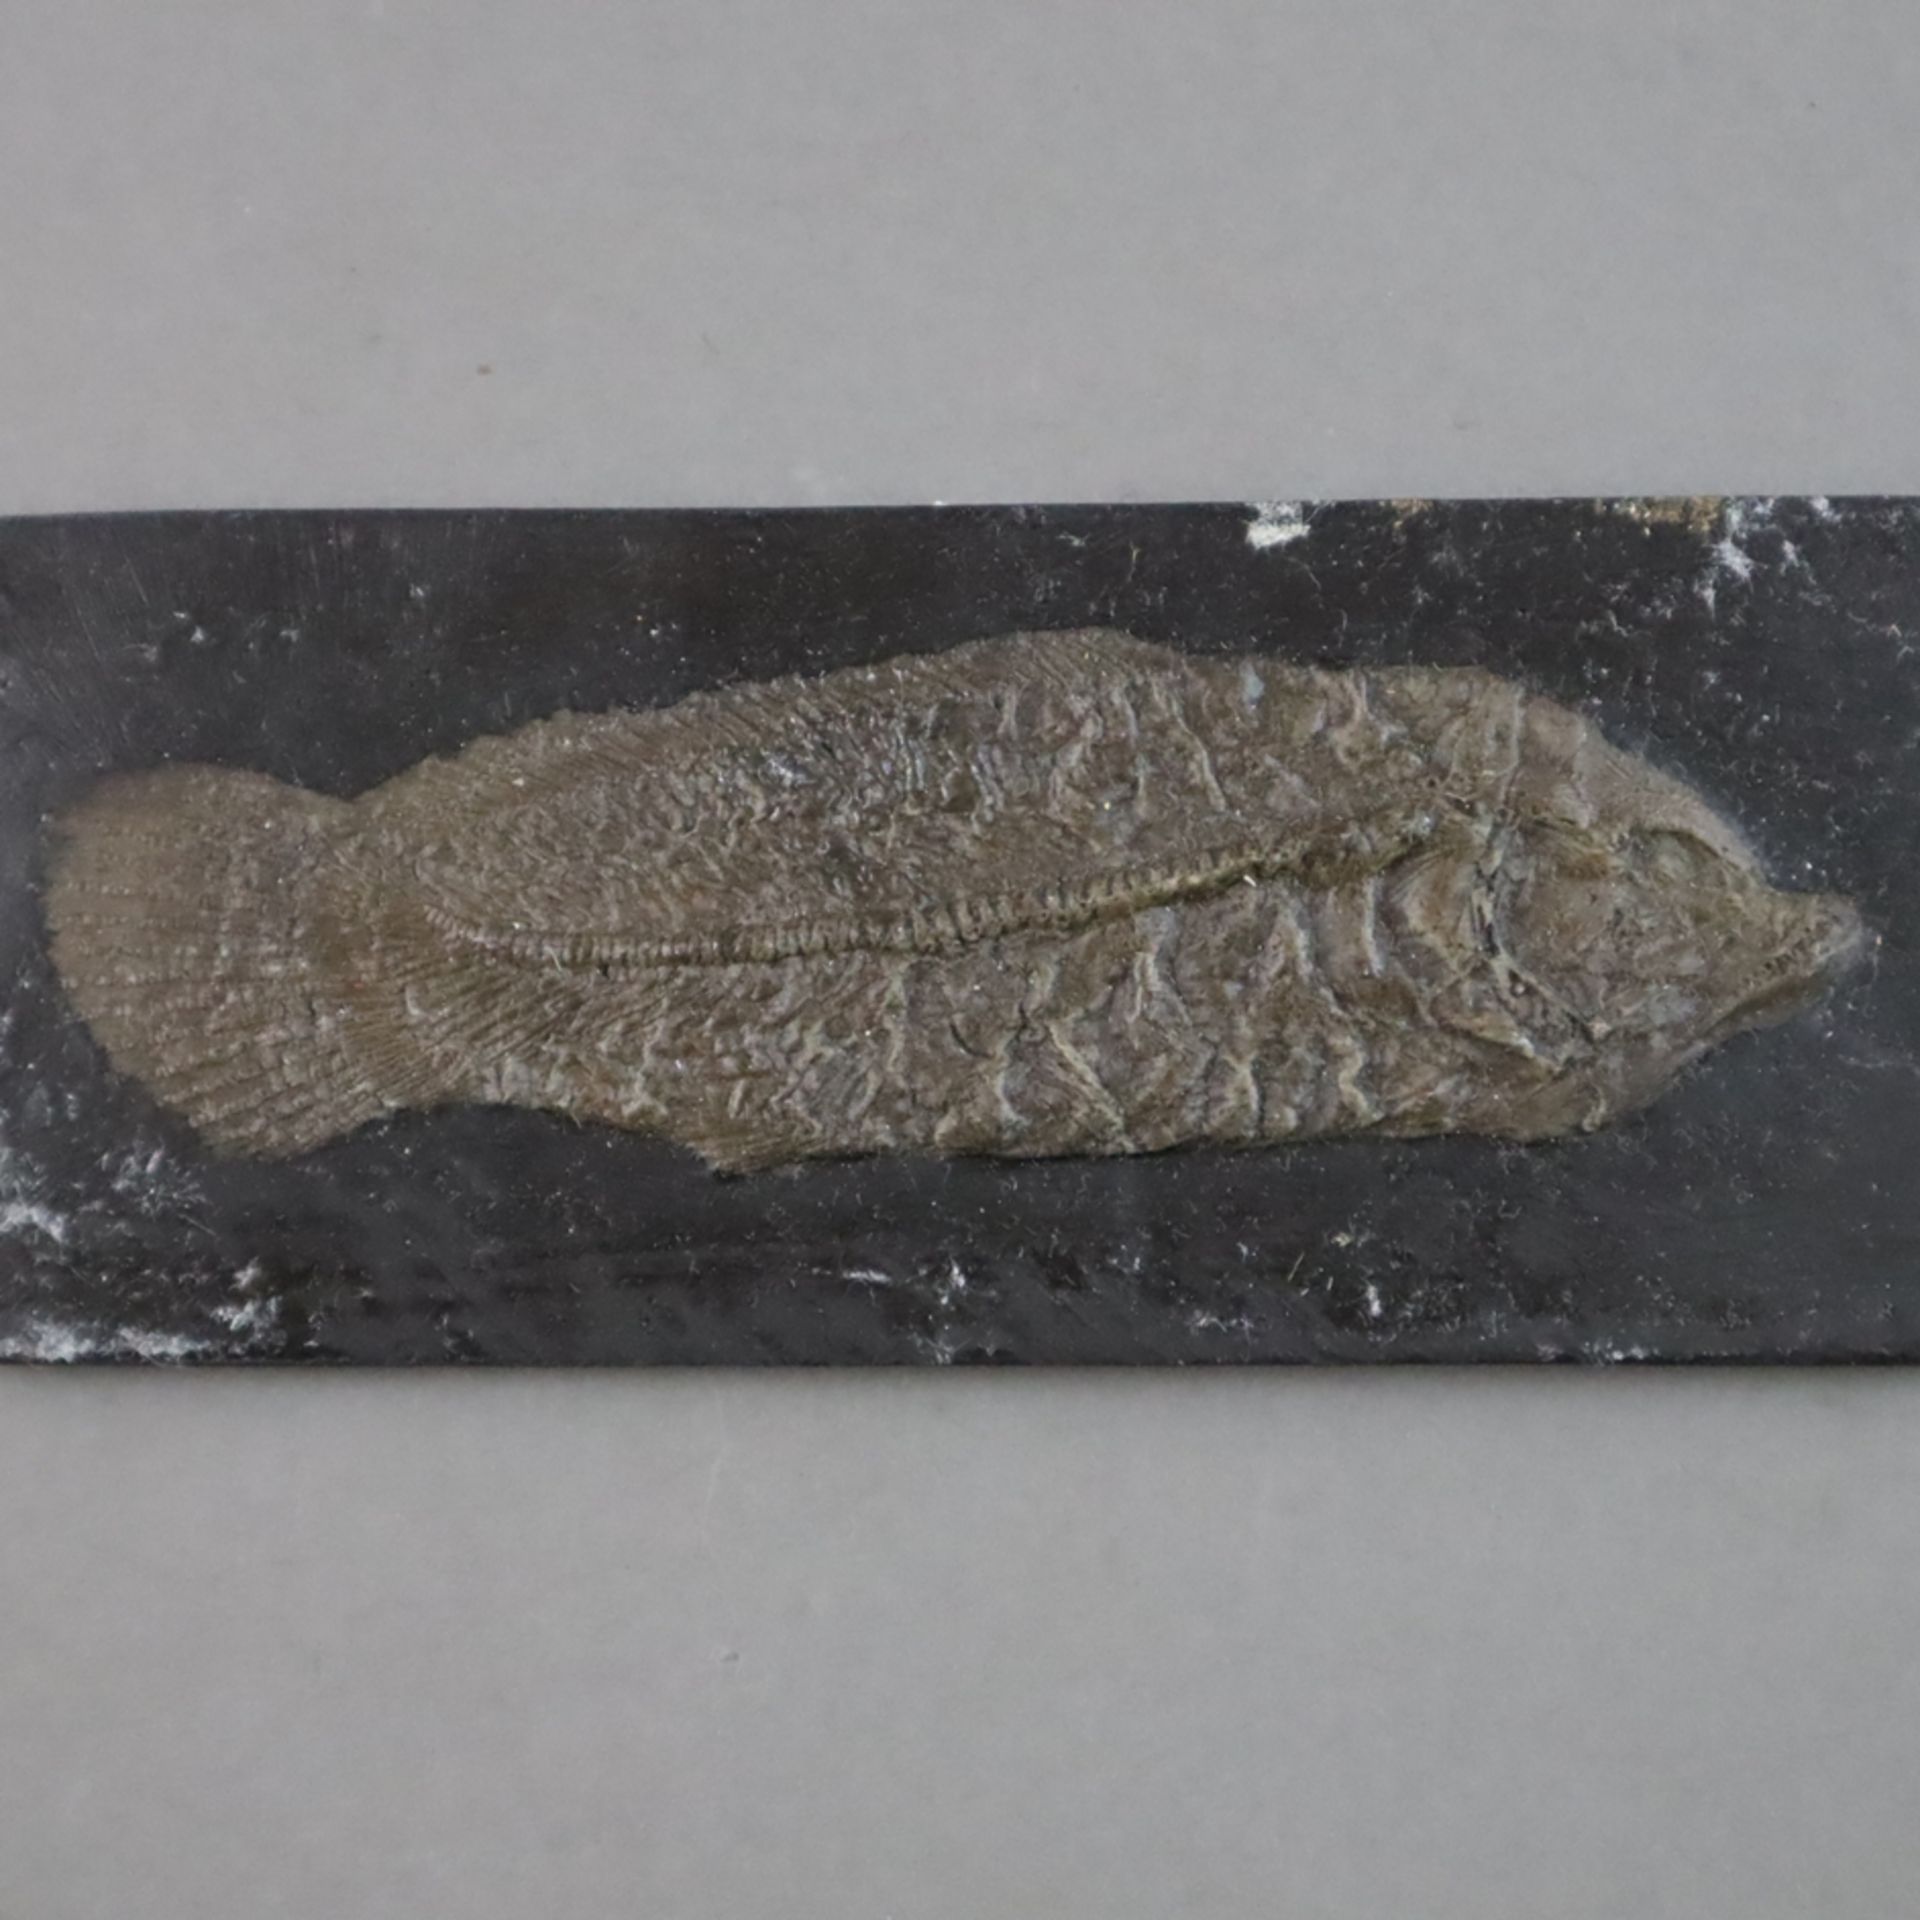 Drei Fossilien - 2x Amia Kehreri (Kahlhecht), L.ca. 13,2cm und 22cm, 1x Tropisches Blatt, L.ca.11,2 - Bild 3 aus 5